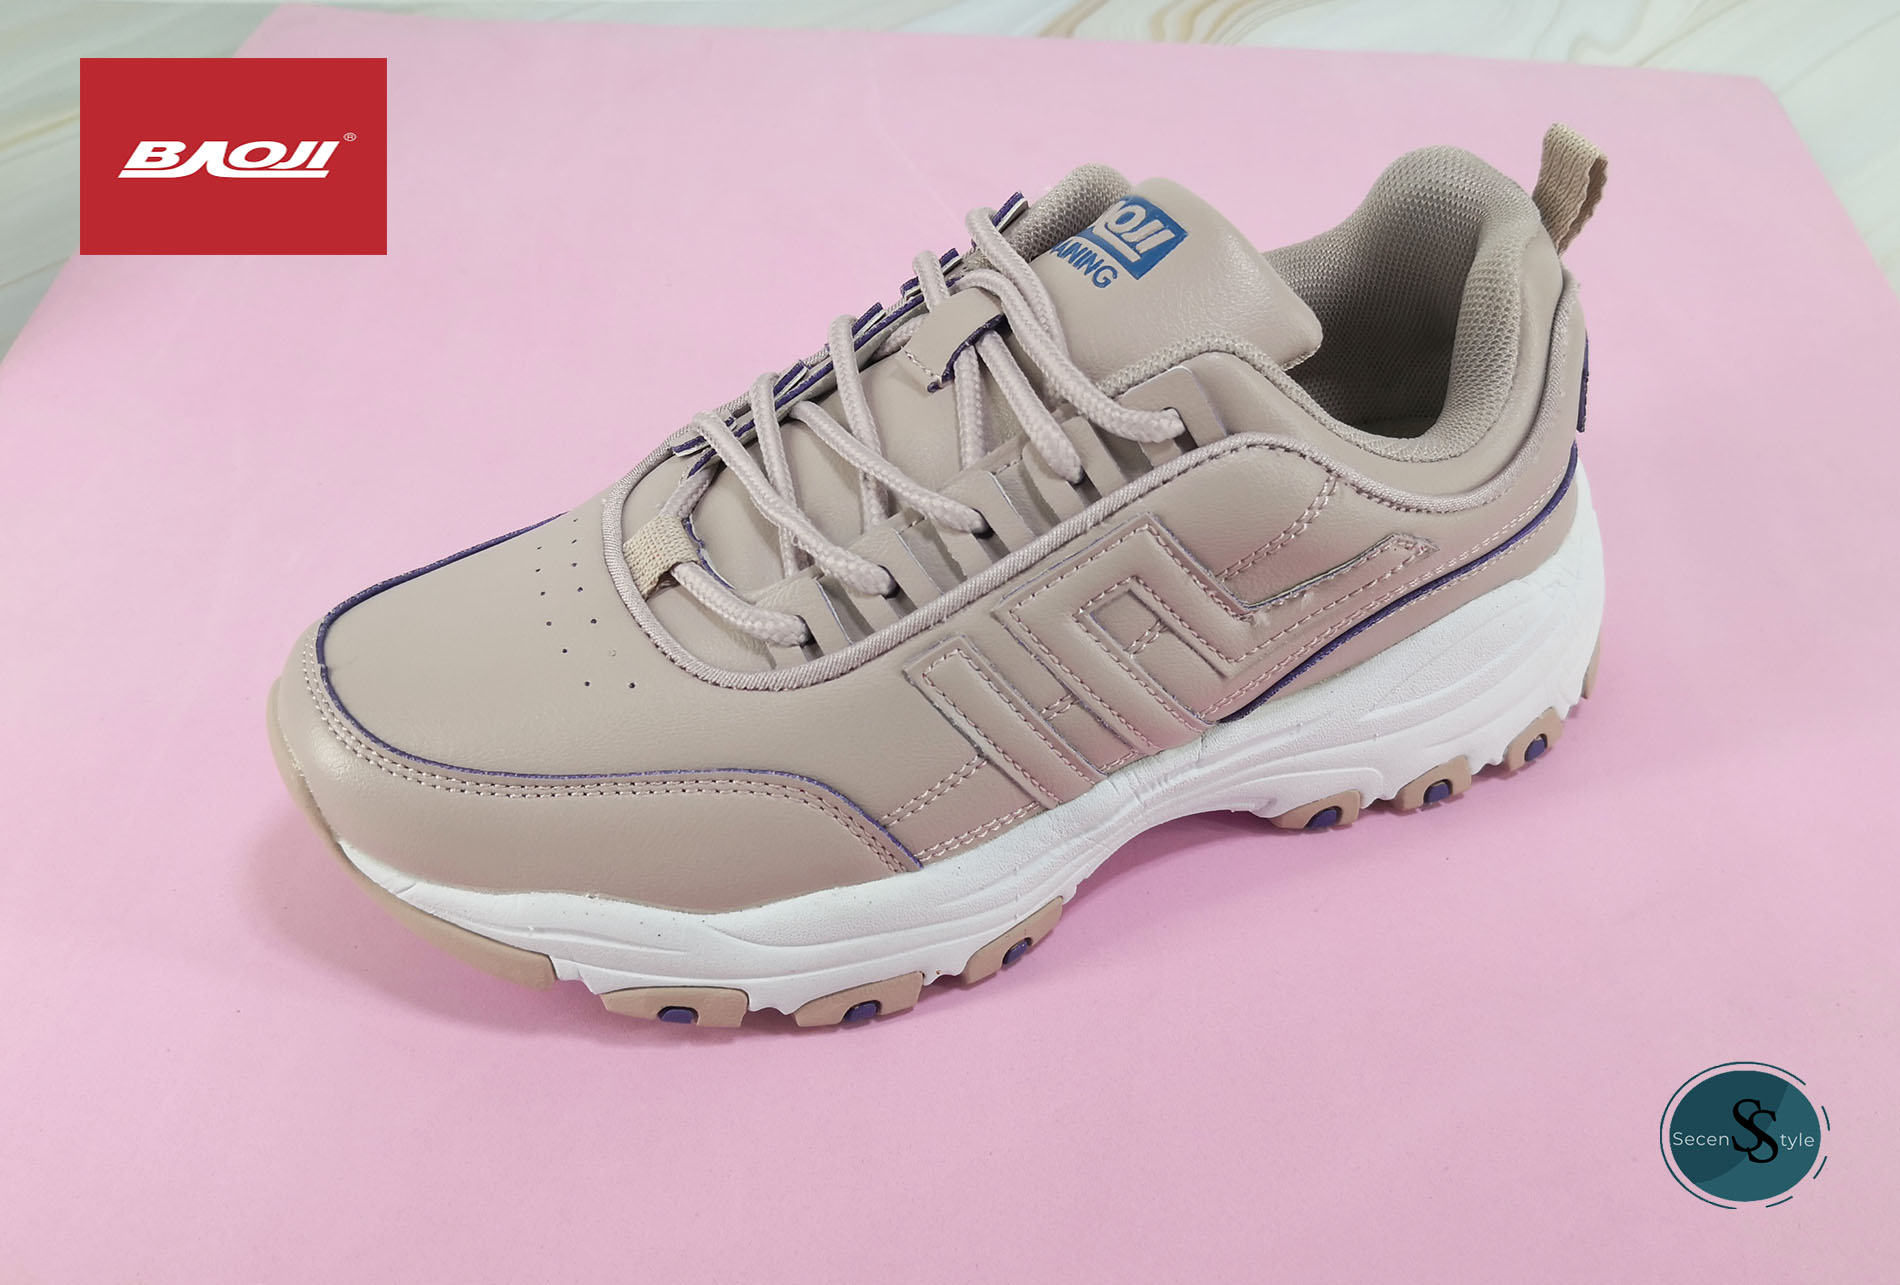 Baoji แท้ รุ่น BJW-673 สำหรับผู้หญิง รองเท้าผ้าใบสามารถใส่เล่นกีฬาได้ เบา ((NEW PRODUCT))